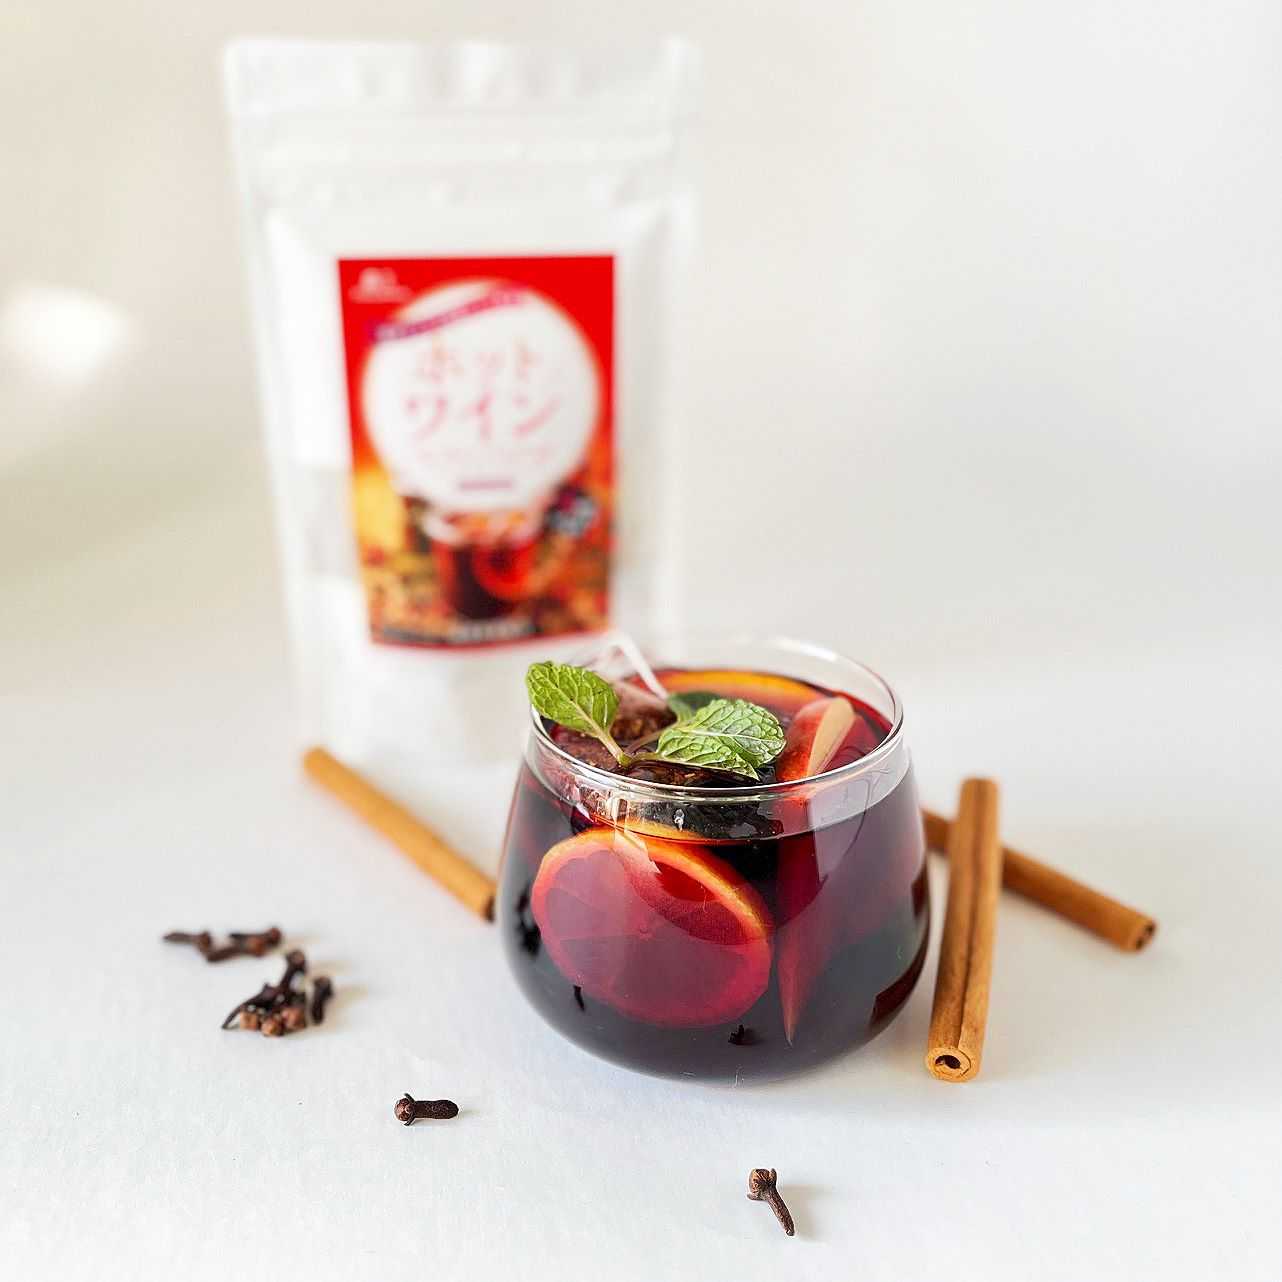 Mayutama's Japanese Mulled Wine Spice Tea Bags | Taste of Japan